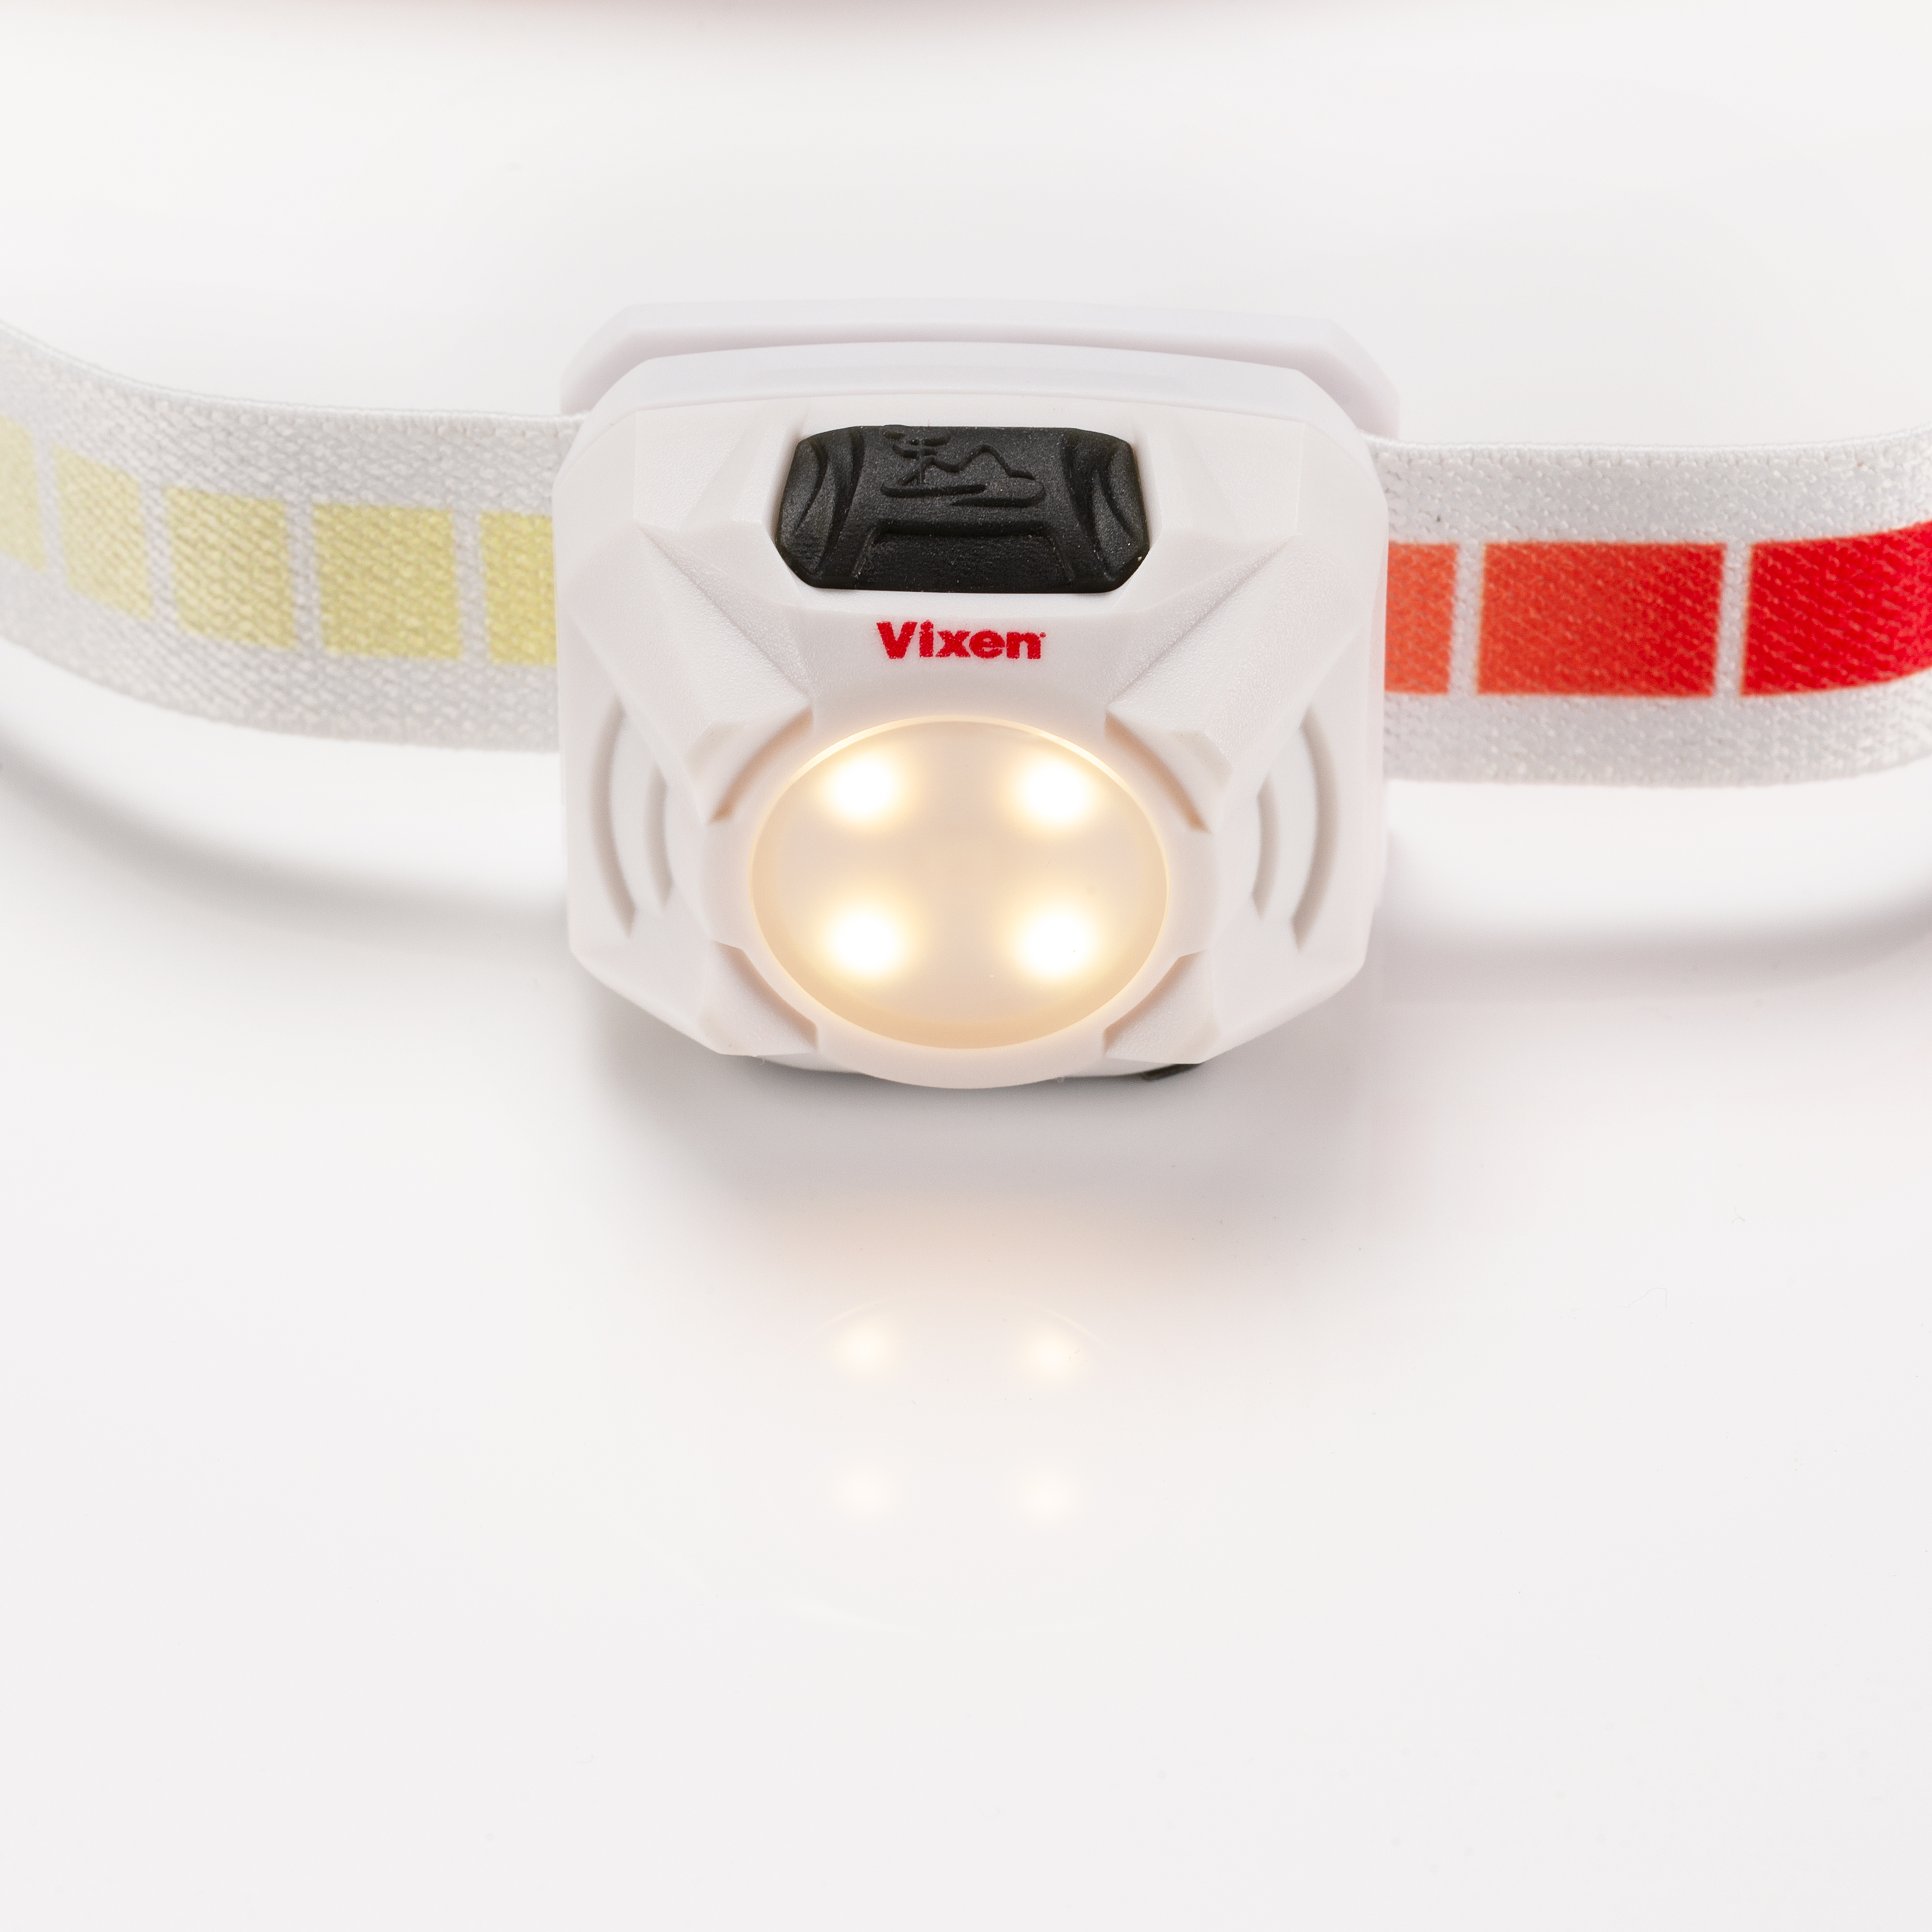 Vixen SG-L02 Headlamp red-light white-light